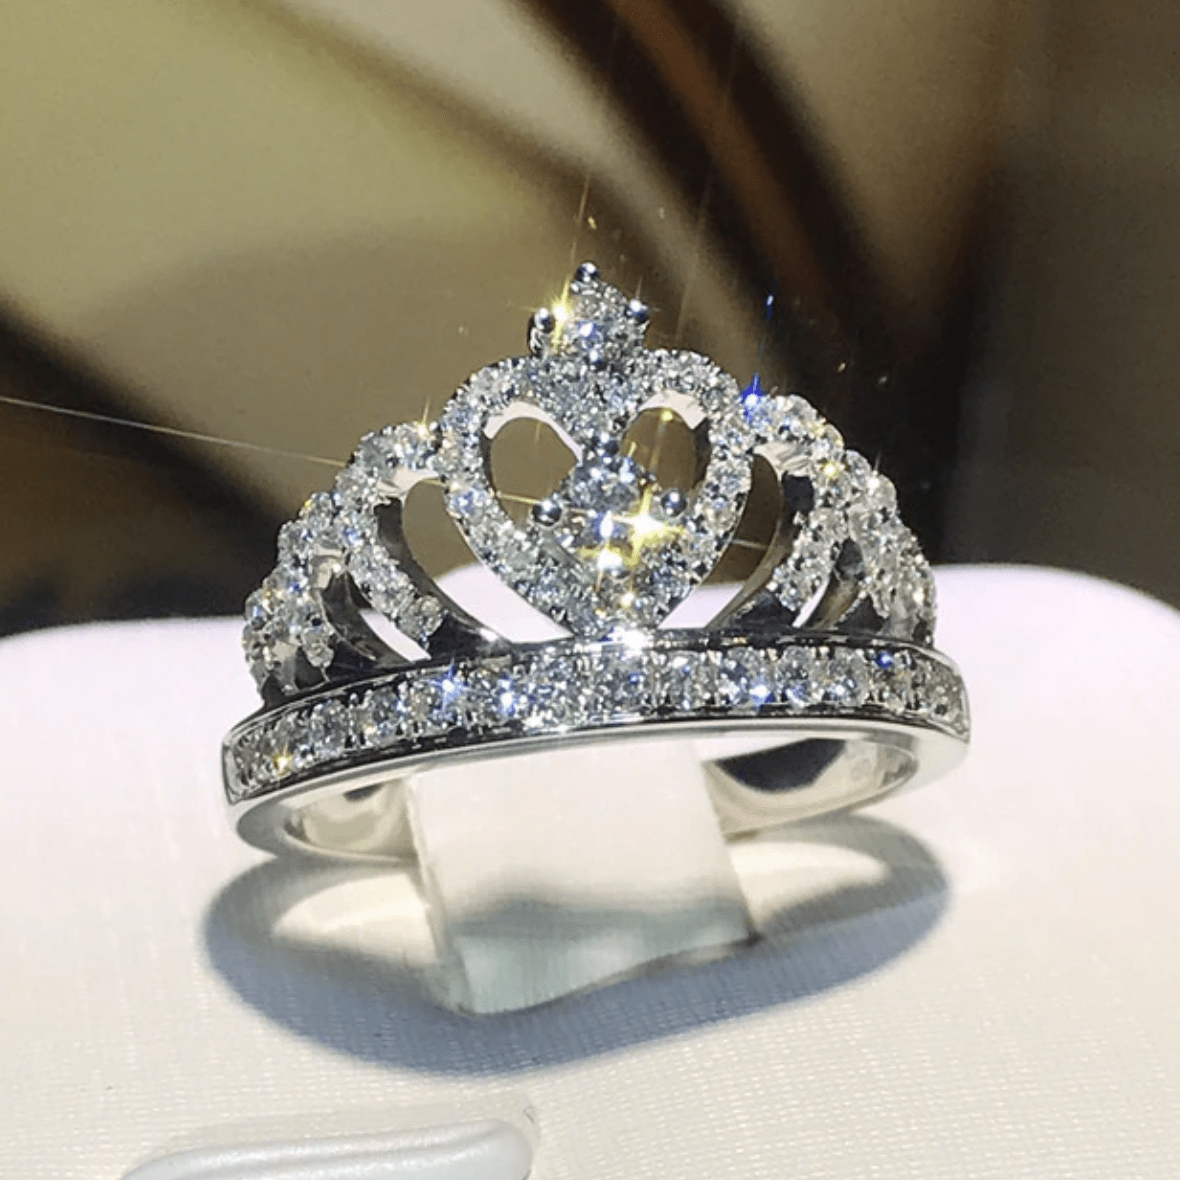 The Diana Crown Ring - I Spy Jewelry